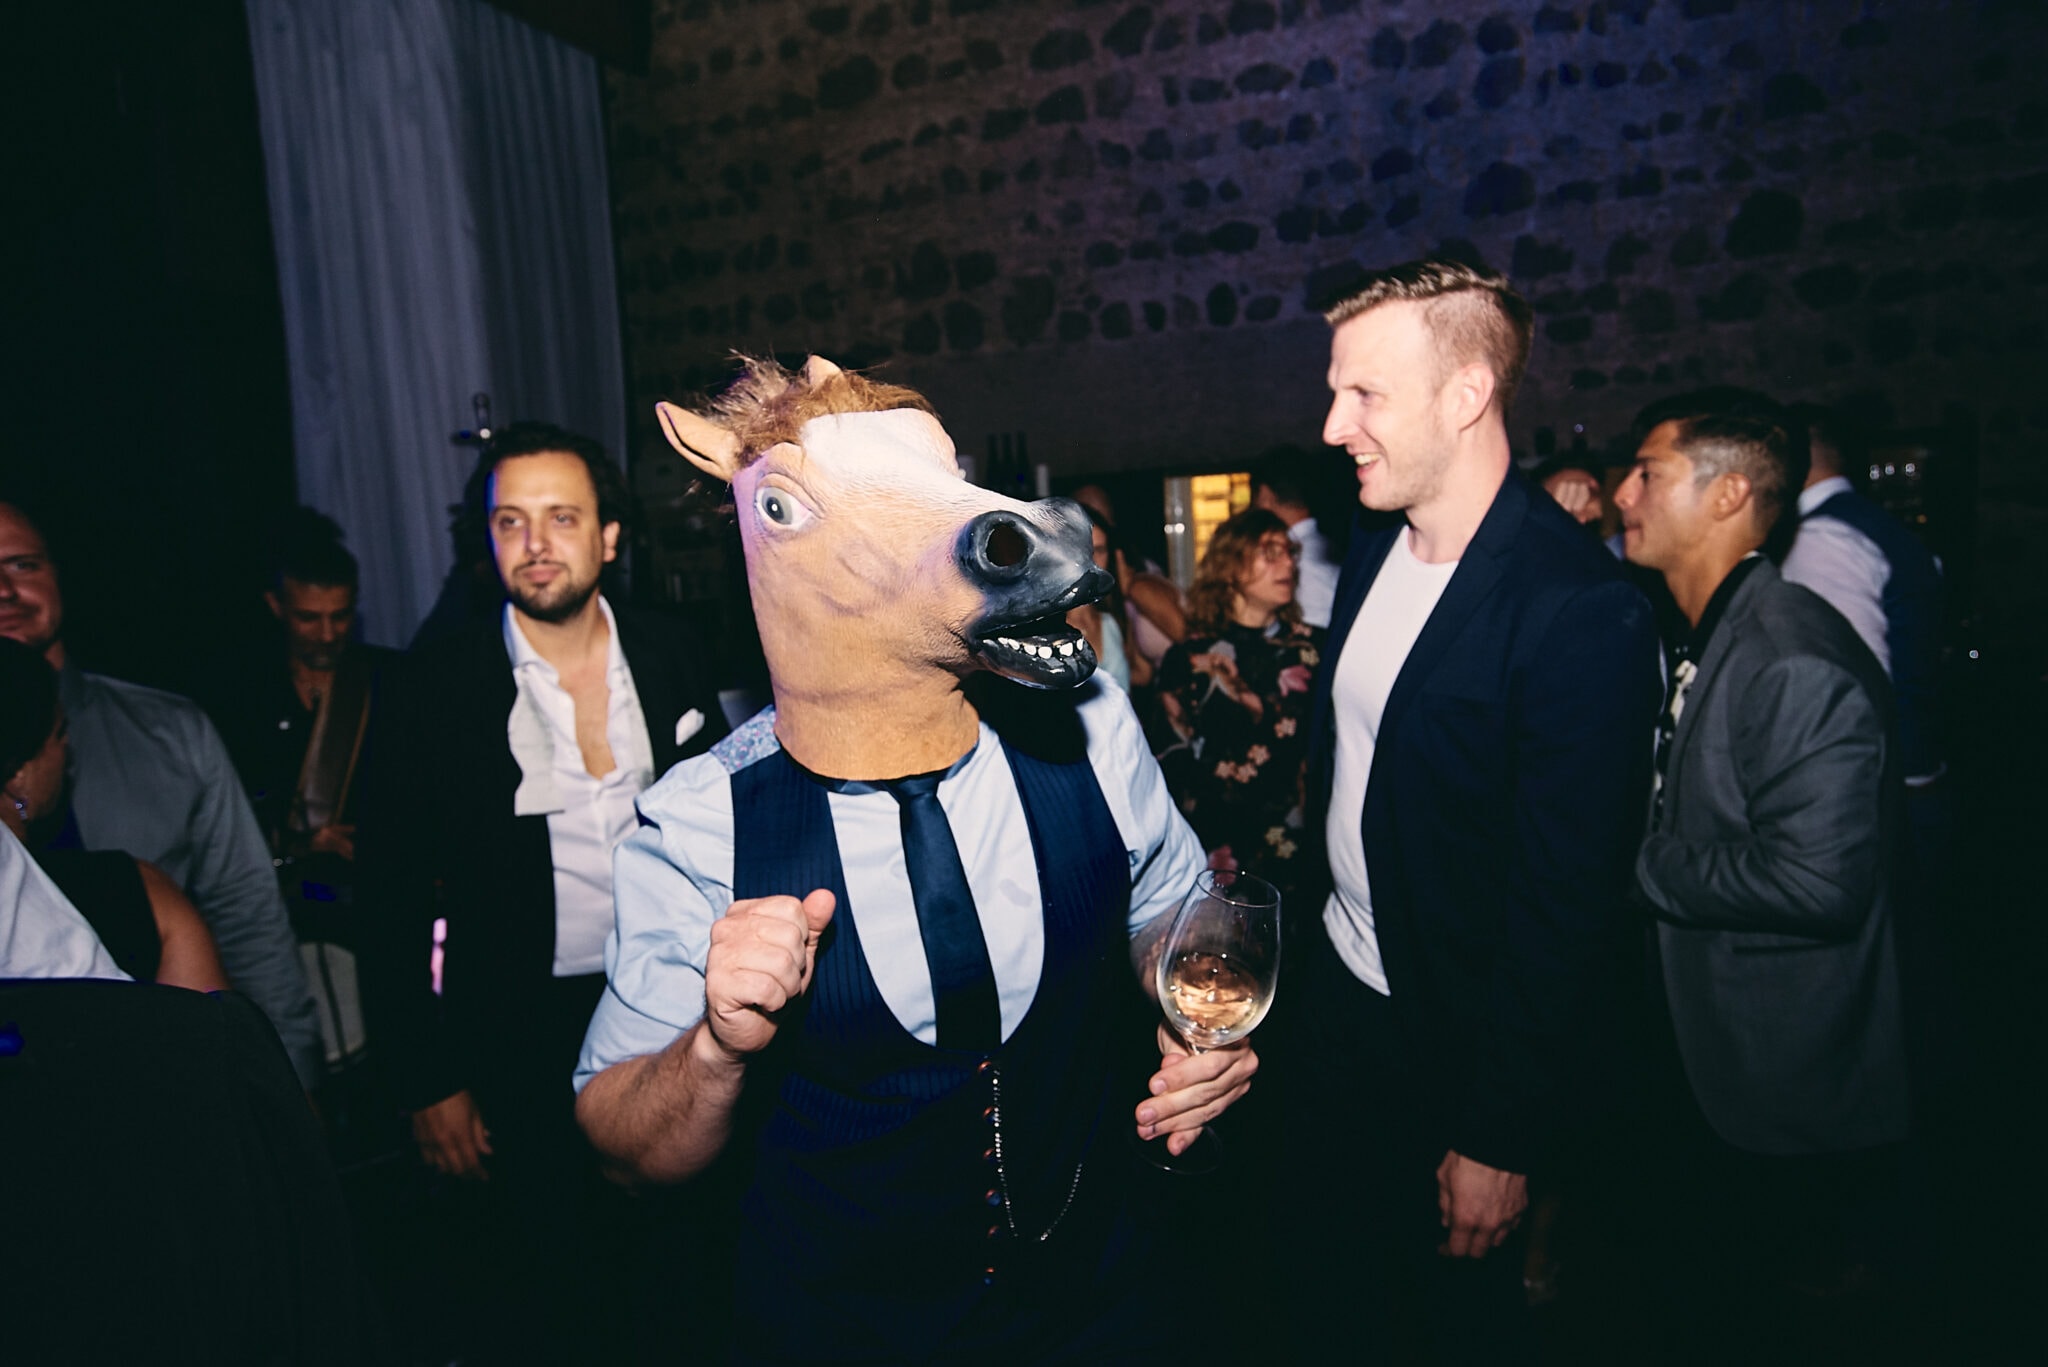 Eine Person mit Pferdekopfmaske hält bei einer Hochzeitsbilder-Veranstaltung einen Drink in der Hand, mit anderen Gästen im Hintergrund.